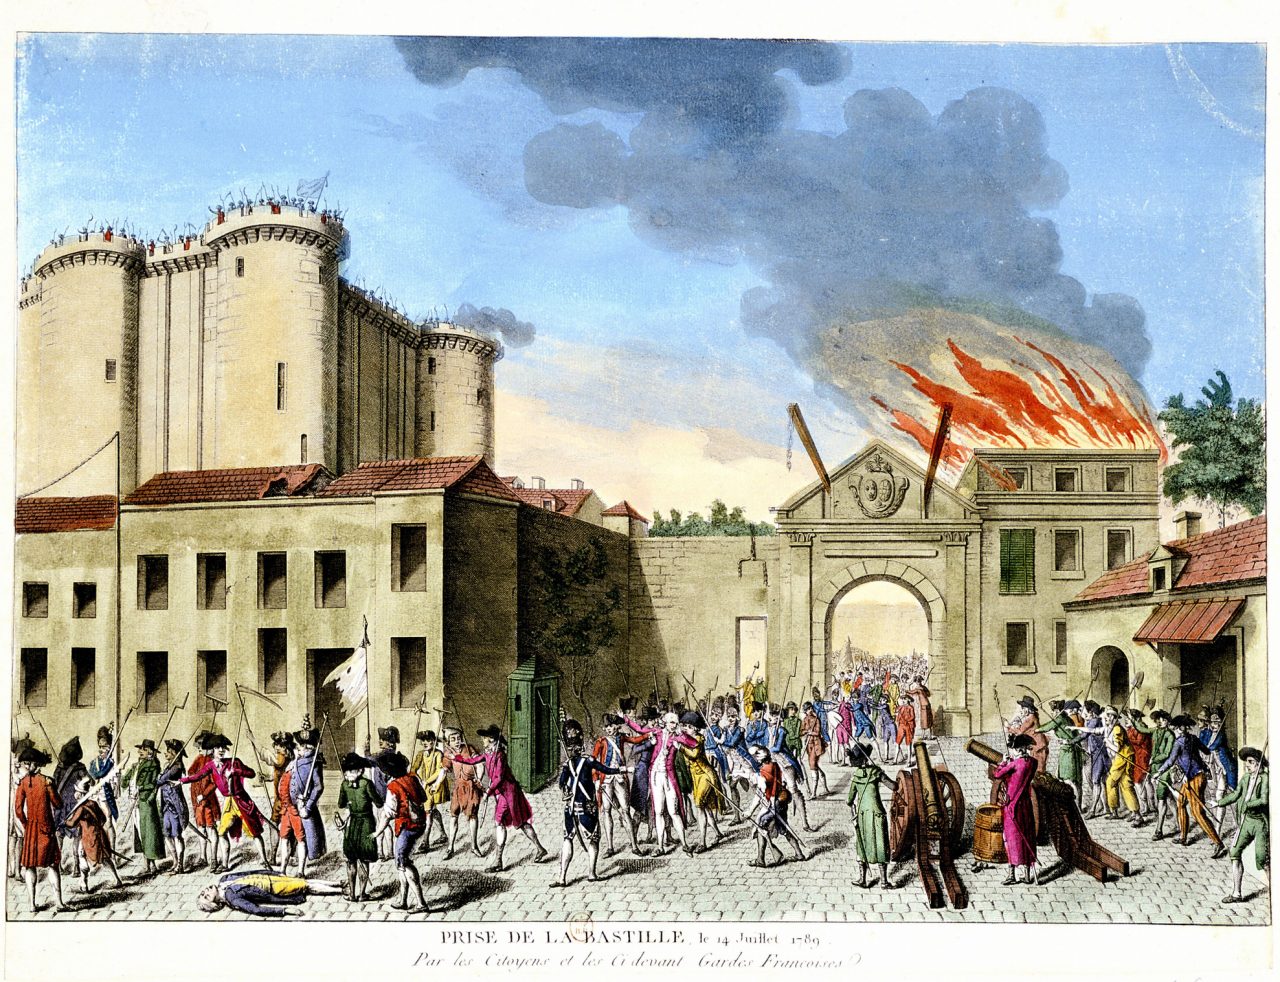 Angrepet på fengselet Bastillen i Paris i 1789.